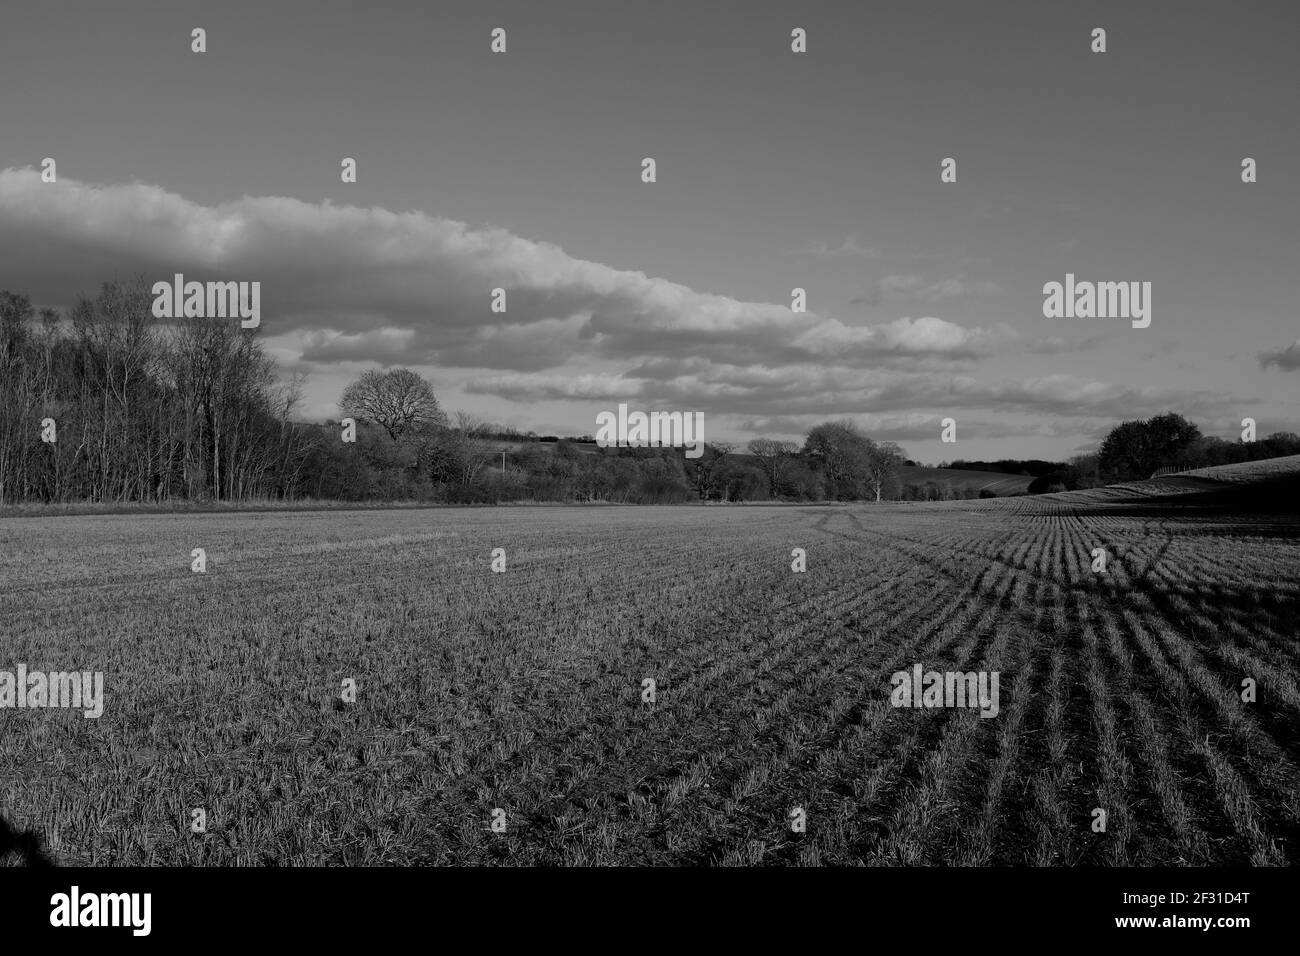 Weite offene Himmel Blick auf große Feld in Newport Essex Warten auf die Anzeige des Beschnitts in Schwarz und Weiß Stockfoto